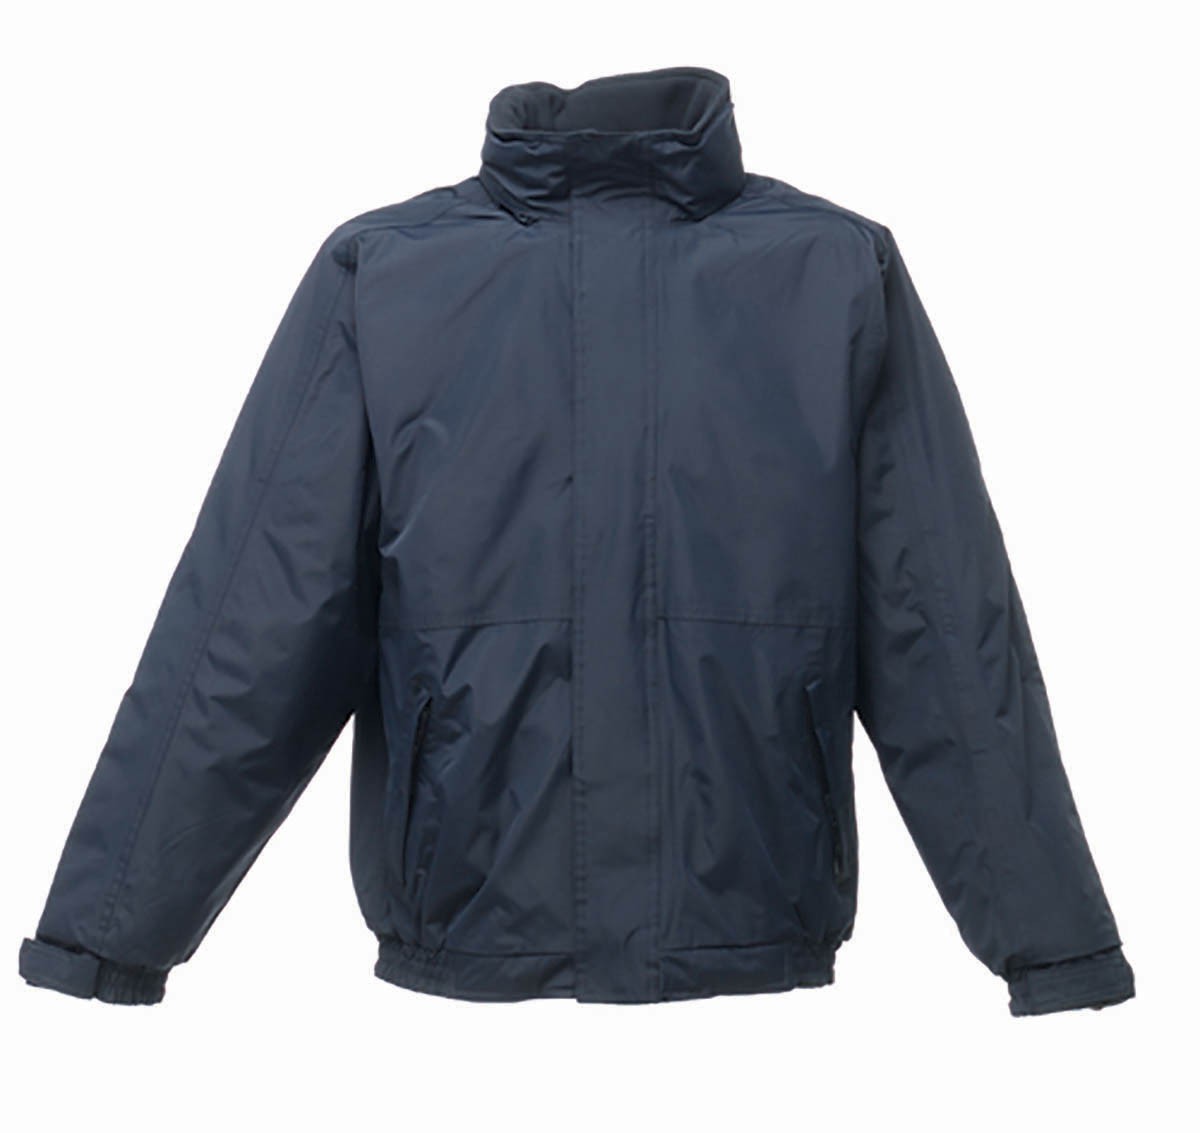 Regatta Professional TRW297 Fleece Lined Dover Bomber Jacket - Blouson  Jackets - Leisure Jackets - Leisurewear - Best Workwear